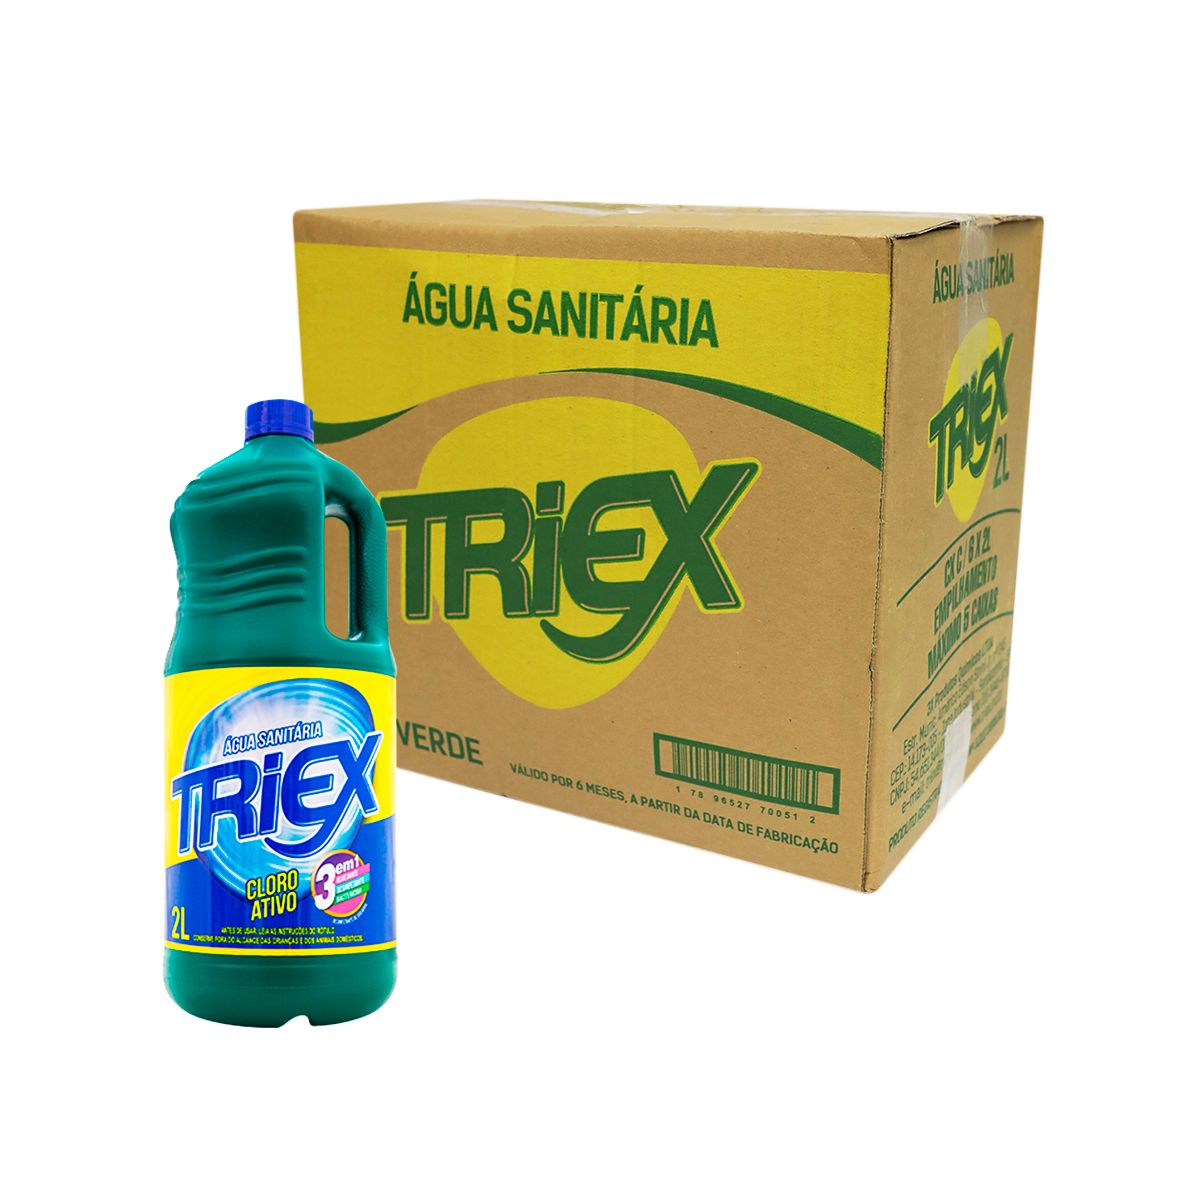 Água Sanitária Triex Cloro Ativo 2L (Caixa com 6 und)